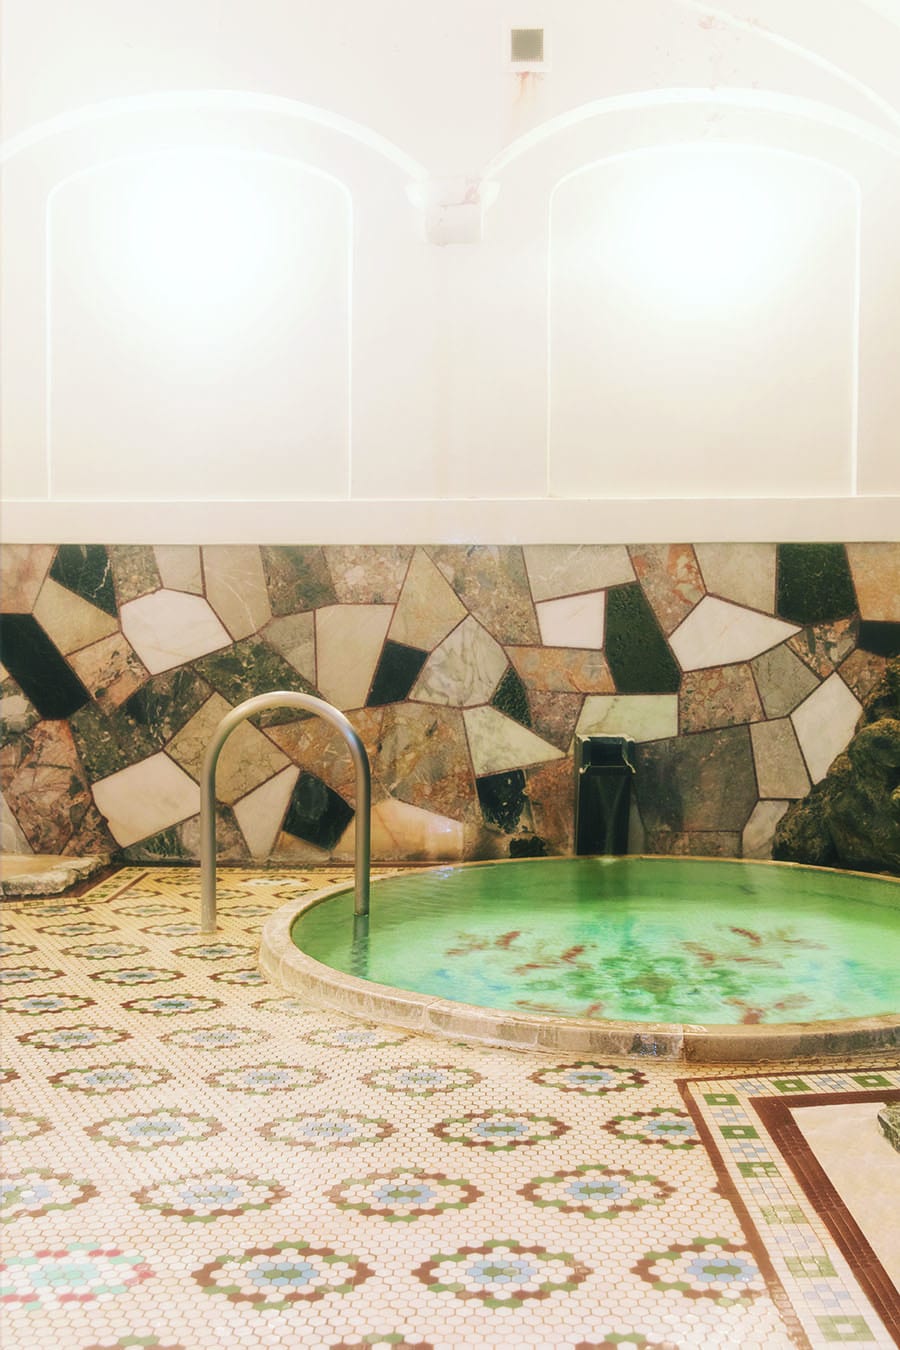 【元湯 環翠楼】床や浴槽のタイルがレトロな「大正風呂」。男湯と女湯は交代制。Photo: Masahiro Shimazaki